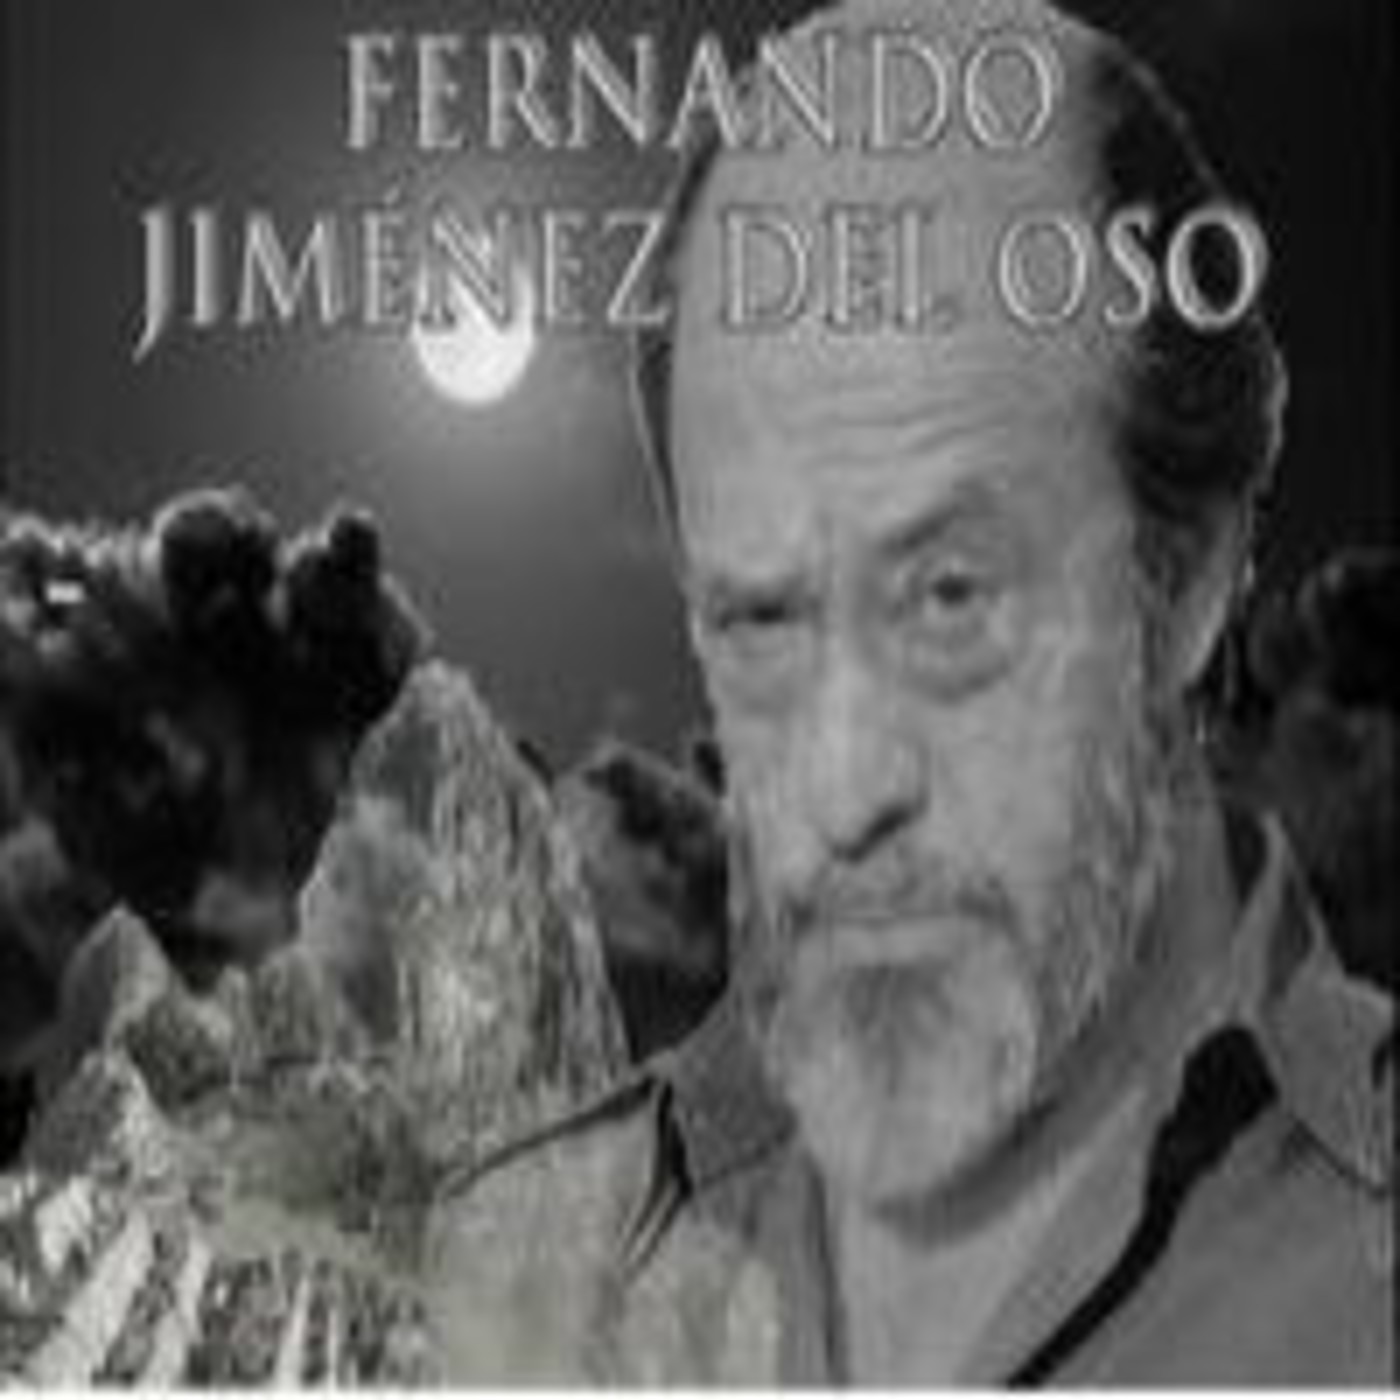 Fernando Jiménez del Oso